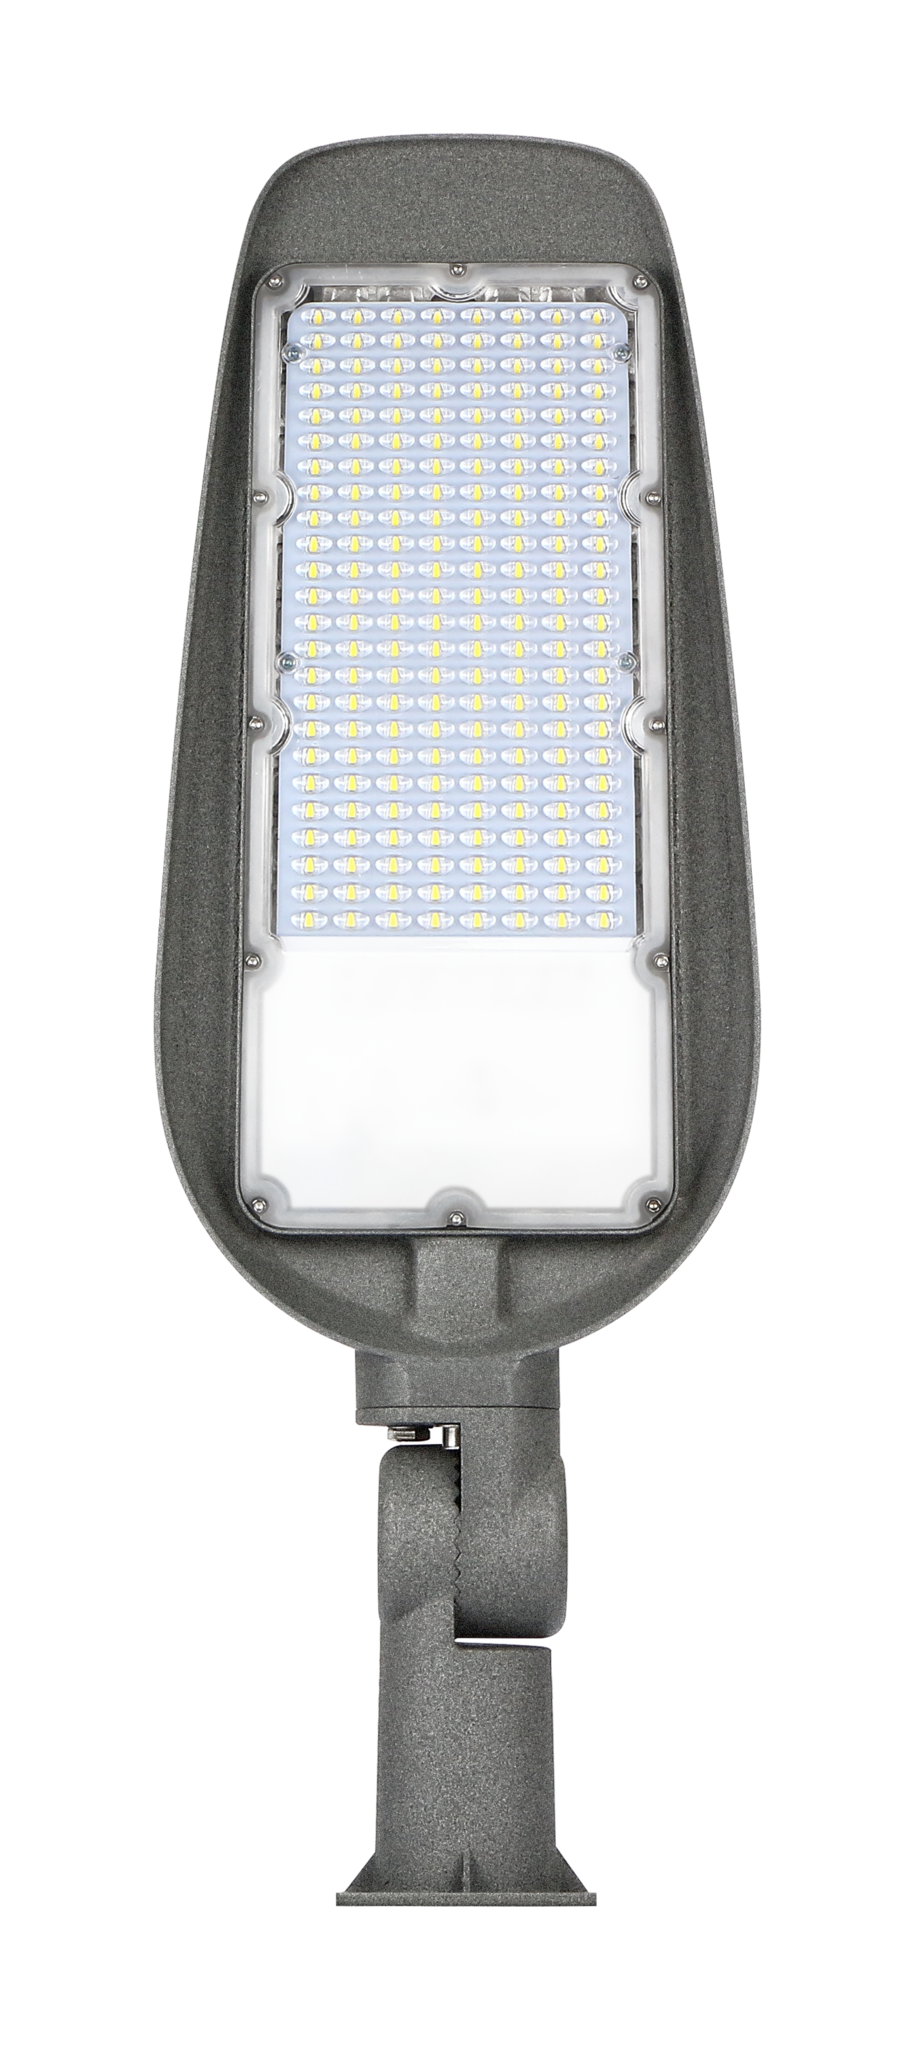 Giet Nog steeds Klik LED Straatlamp kopen? Ruime voorraad en lage prijzen - LedlampshopXL